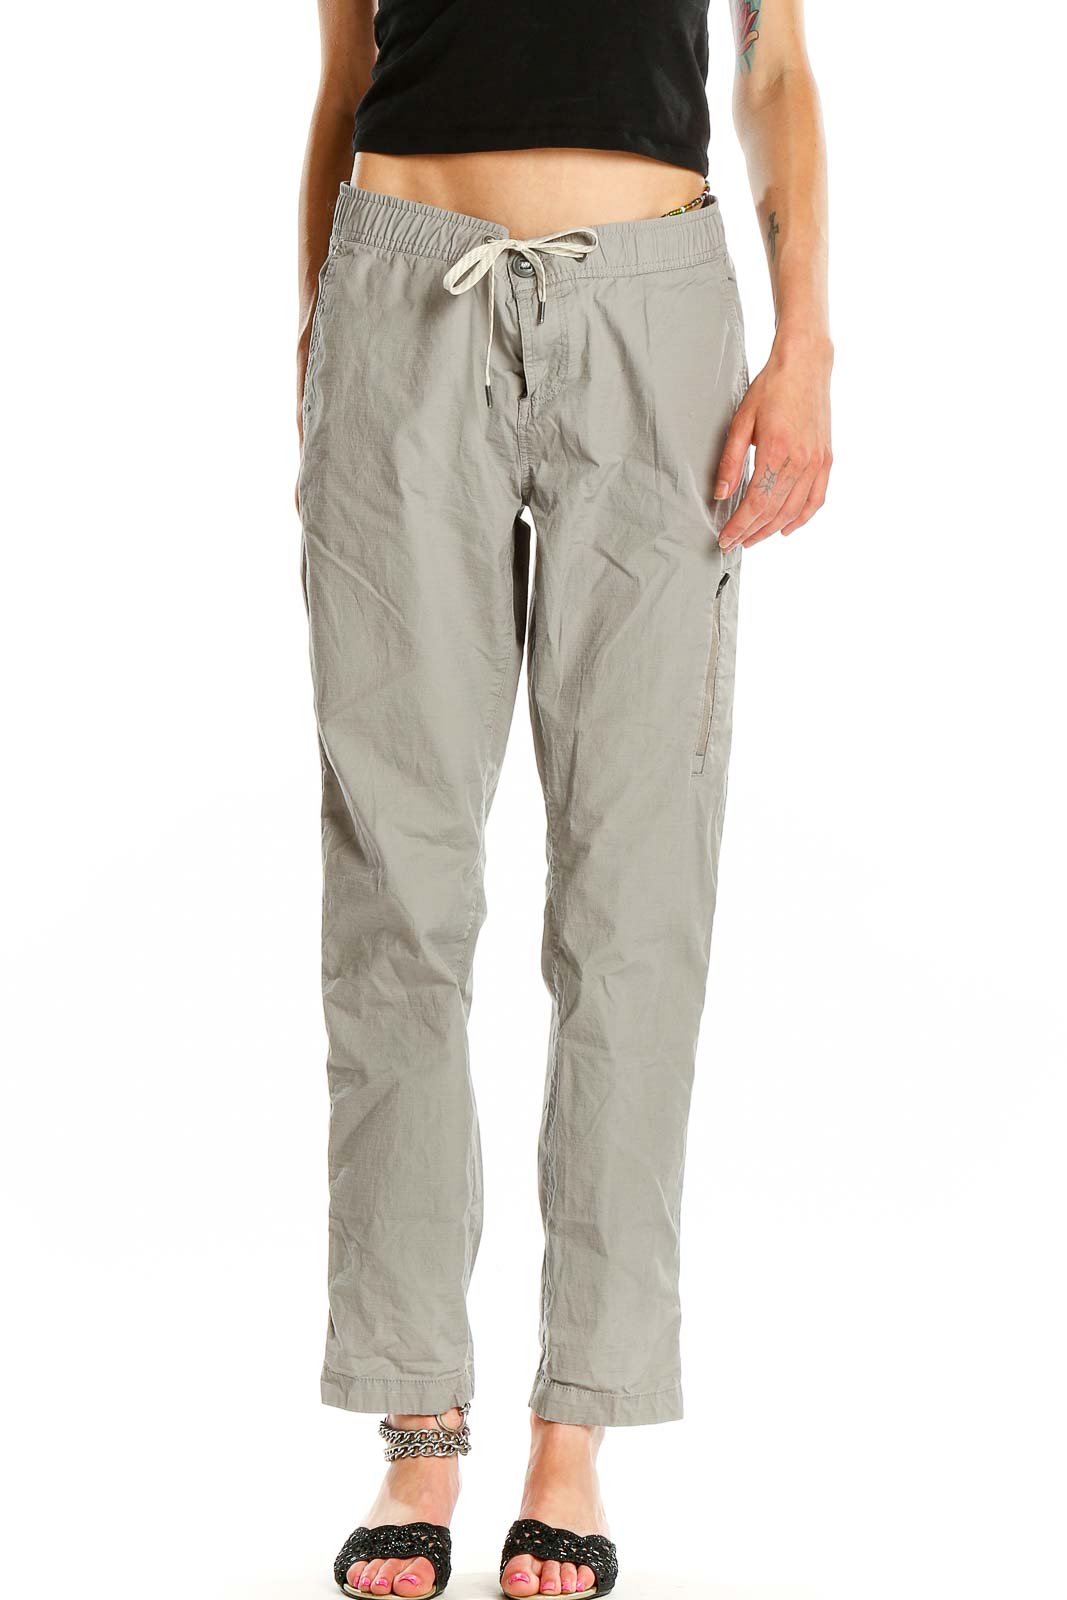 Gray Casual Drawstring Pants Front